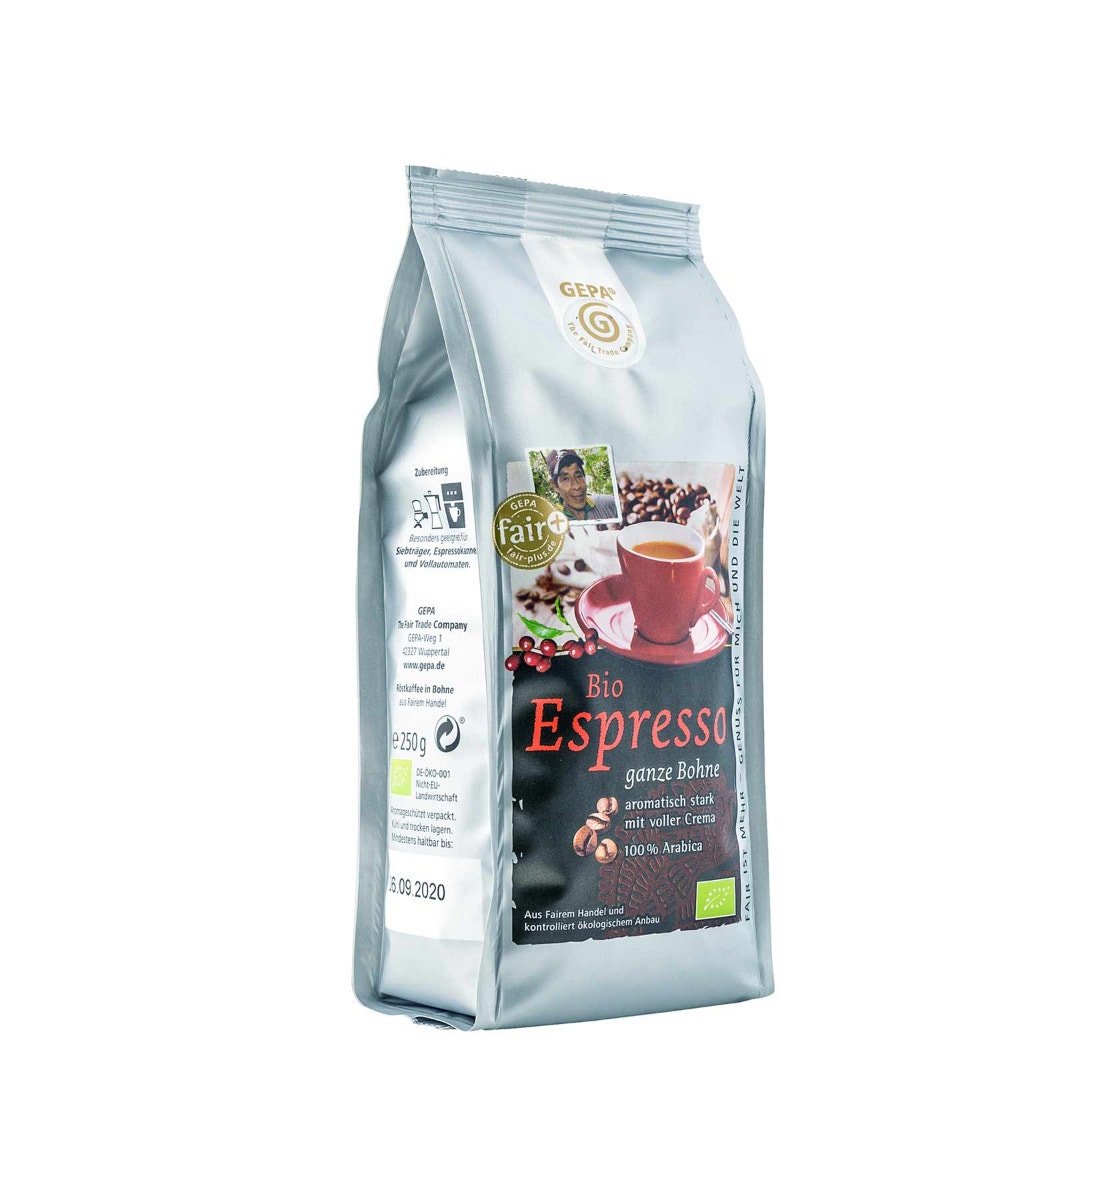 Bio Espresso 250g, Bohne von GEPA